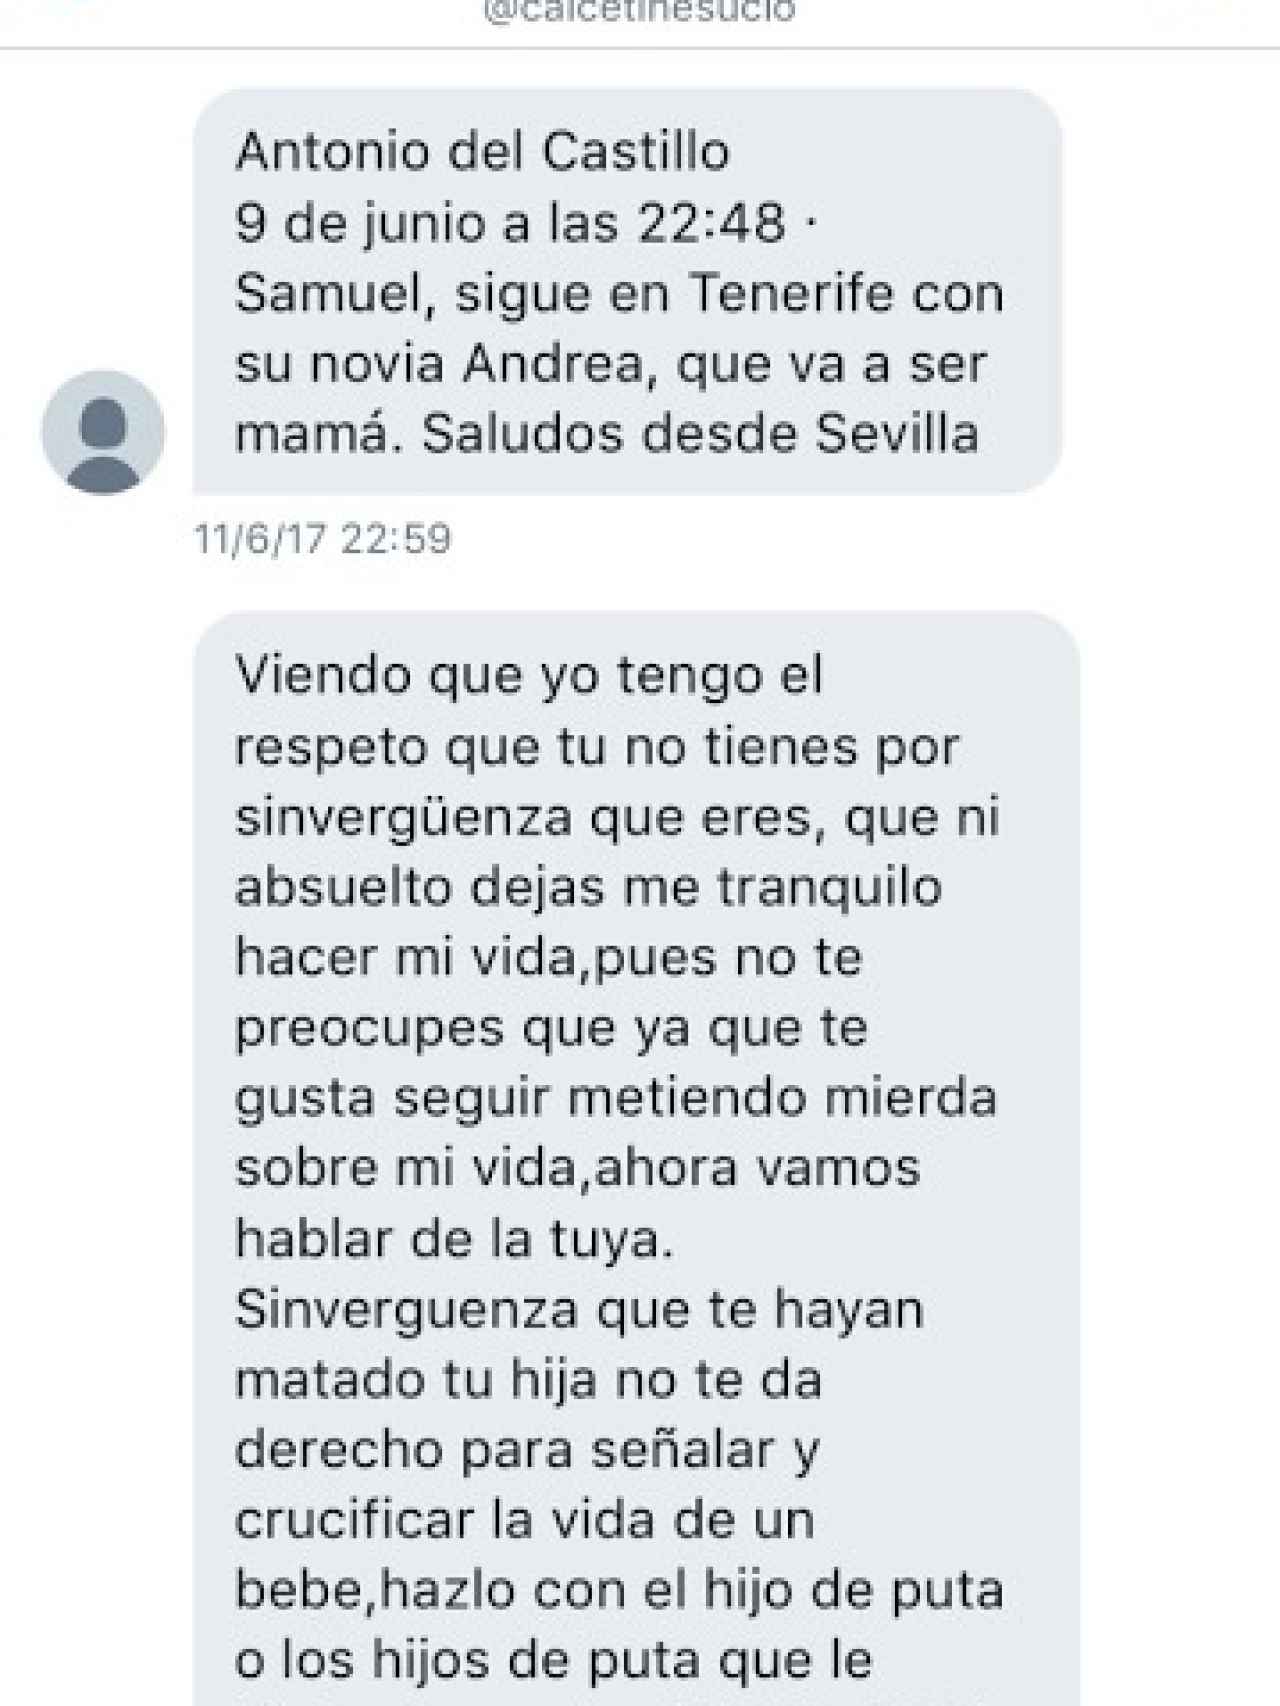 Uno de los mensajes que Samuel le envió a Antonio del Castillo el 11 de julio pasado.